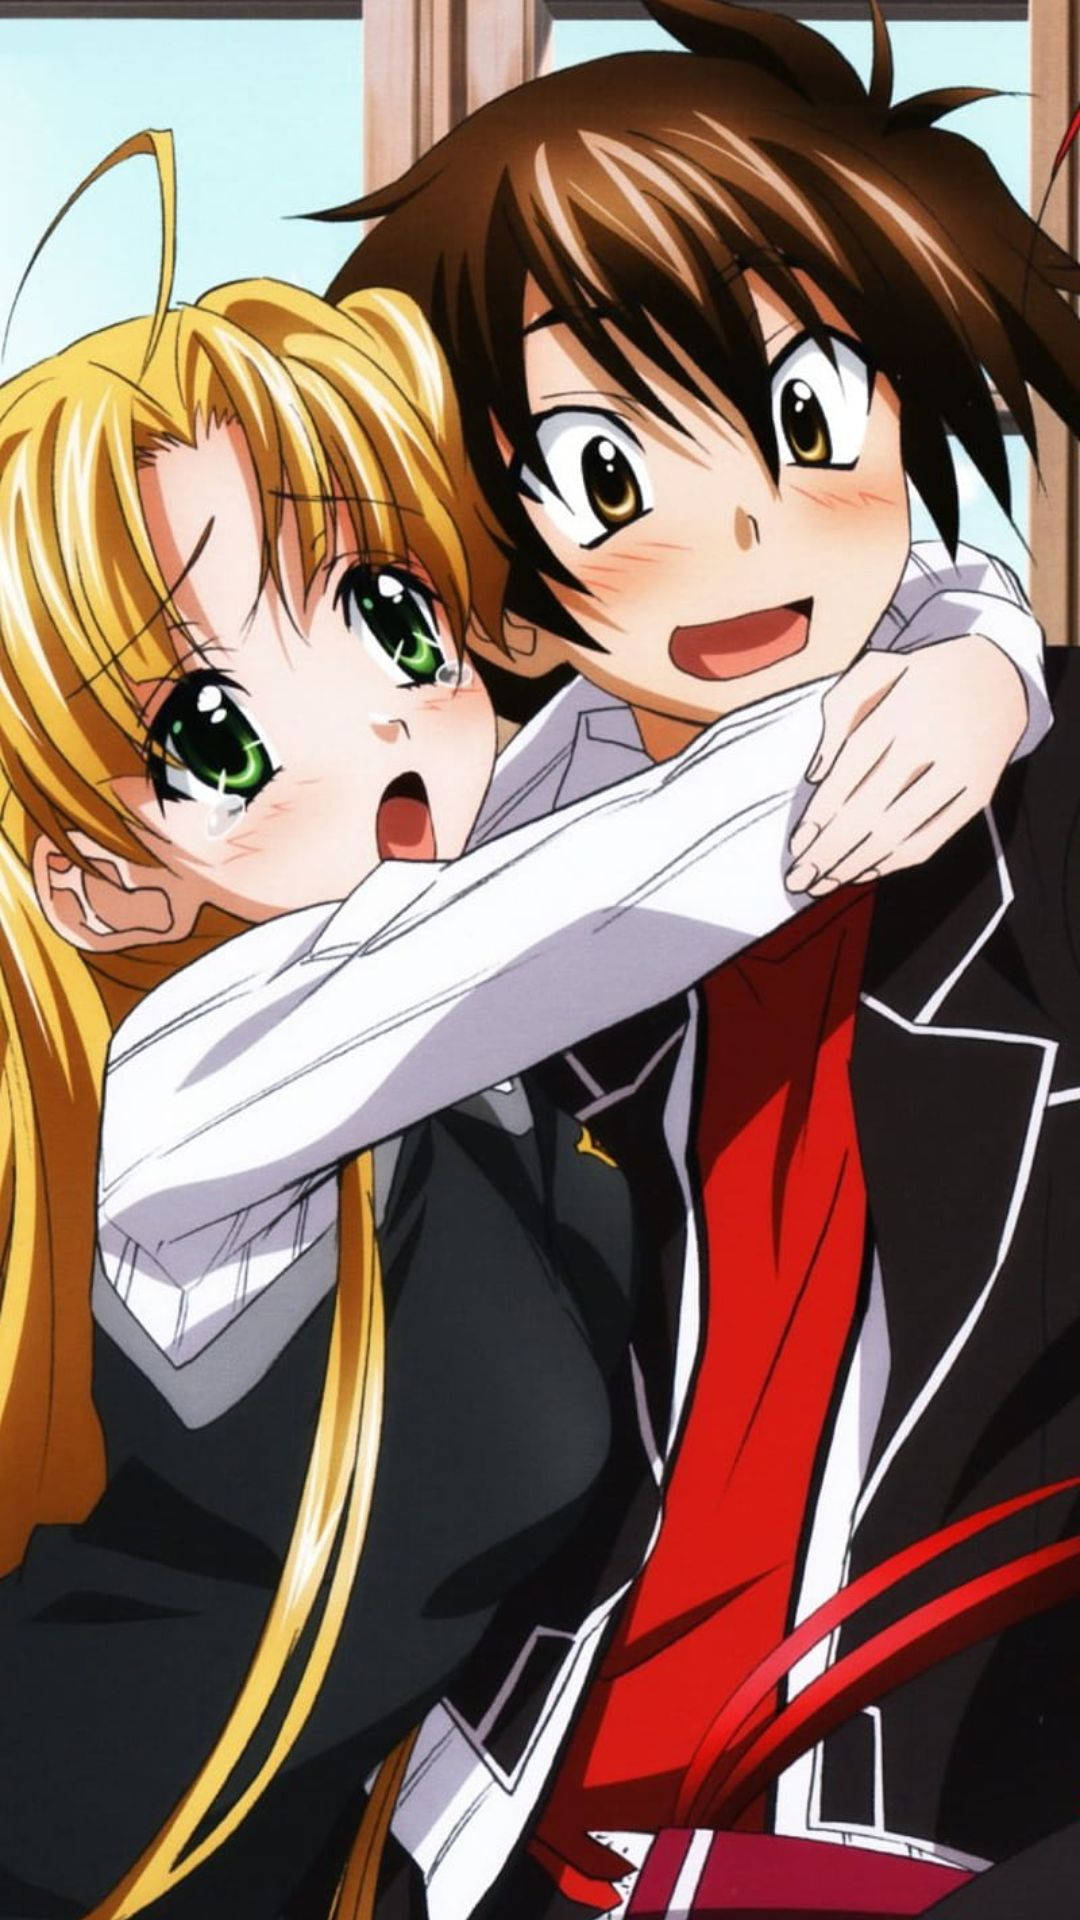 School Girl Anime Hug Background